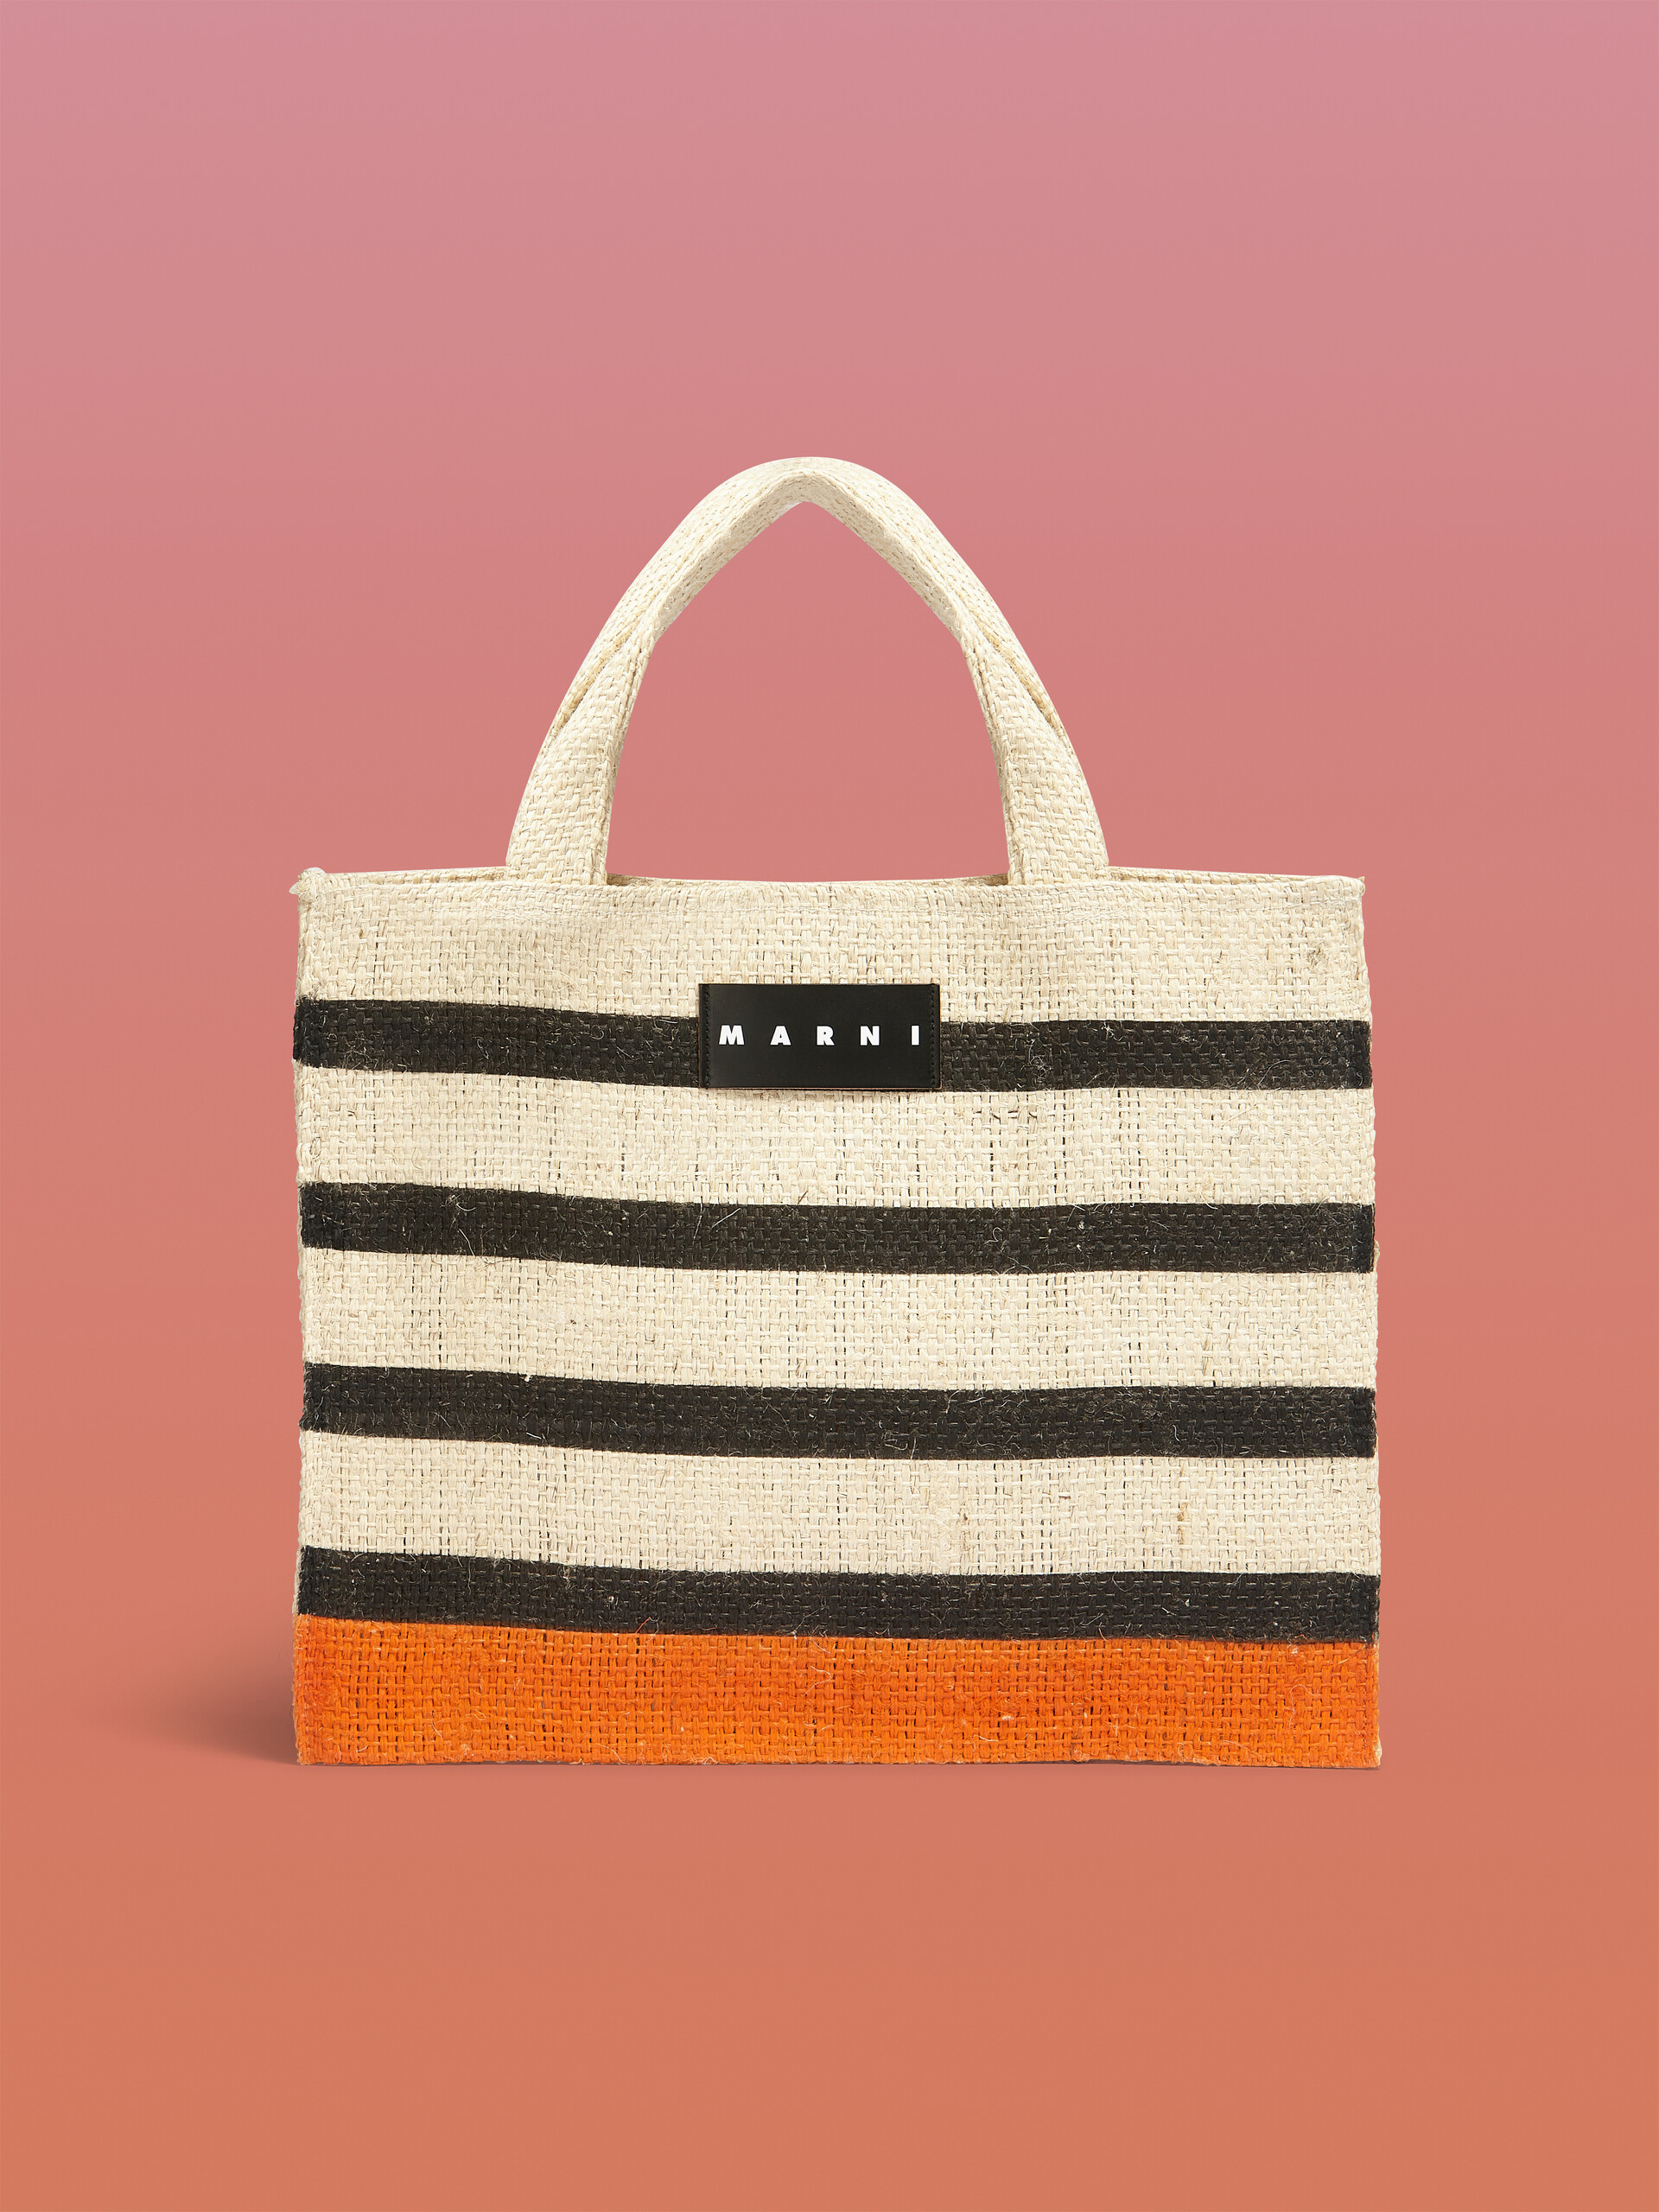 MARNI MARKET CANAPA small bag in black and orange natural fiber - Shopping Bags - Image 1